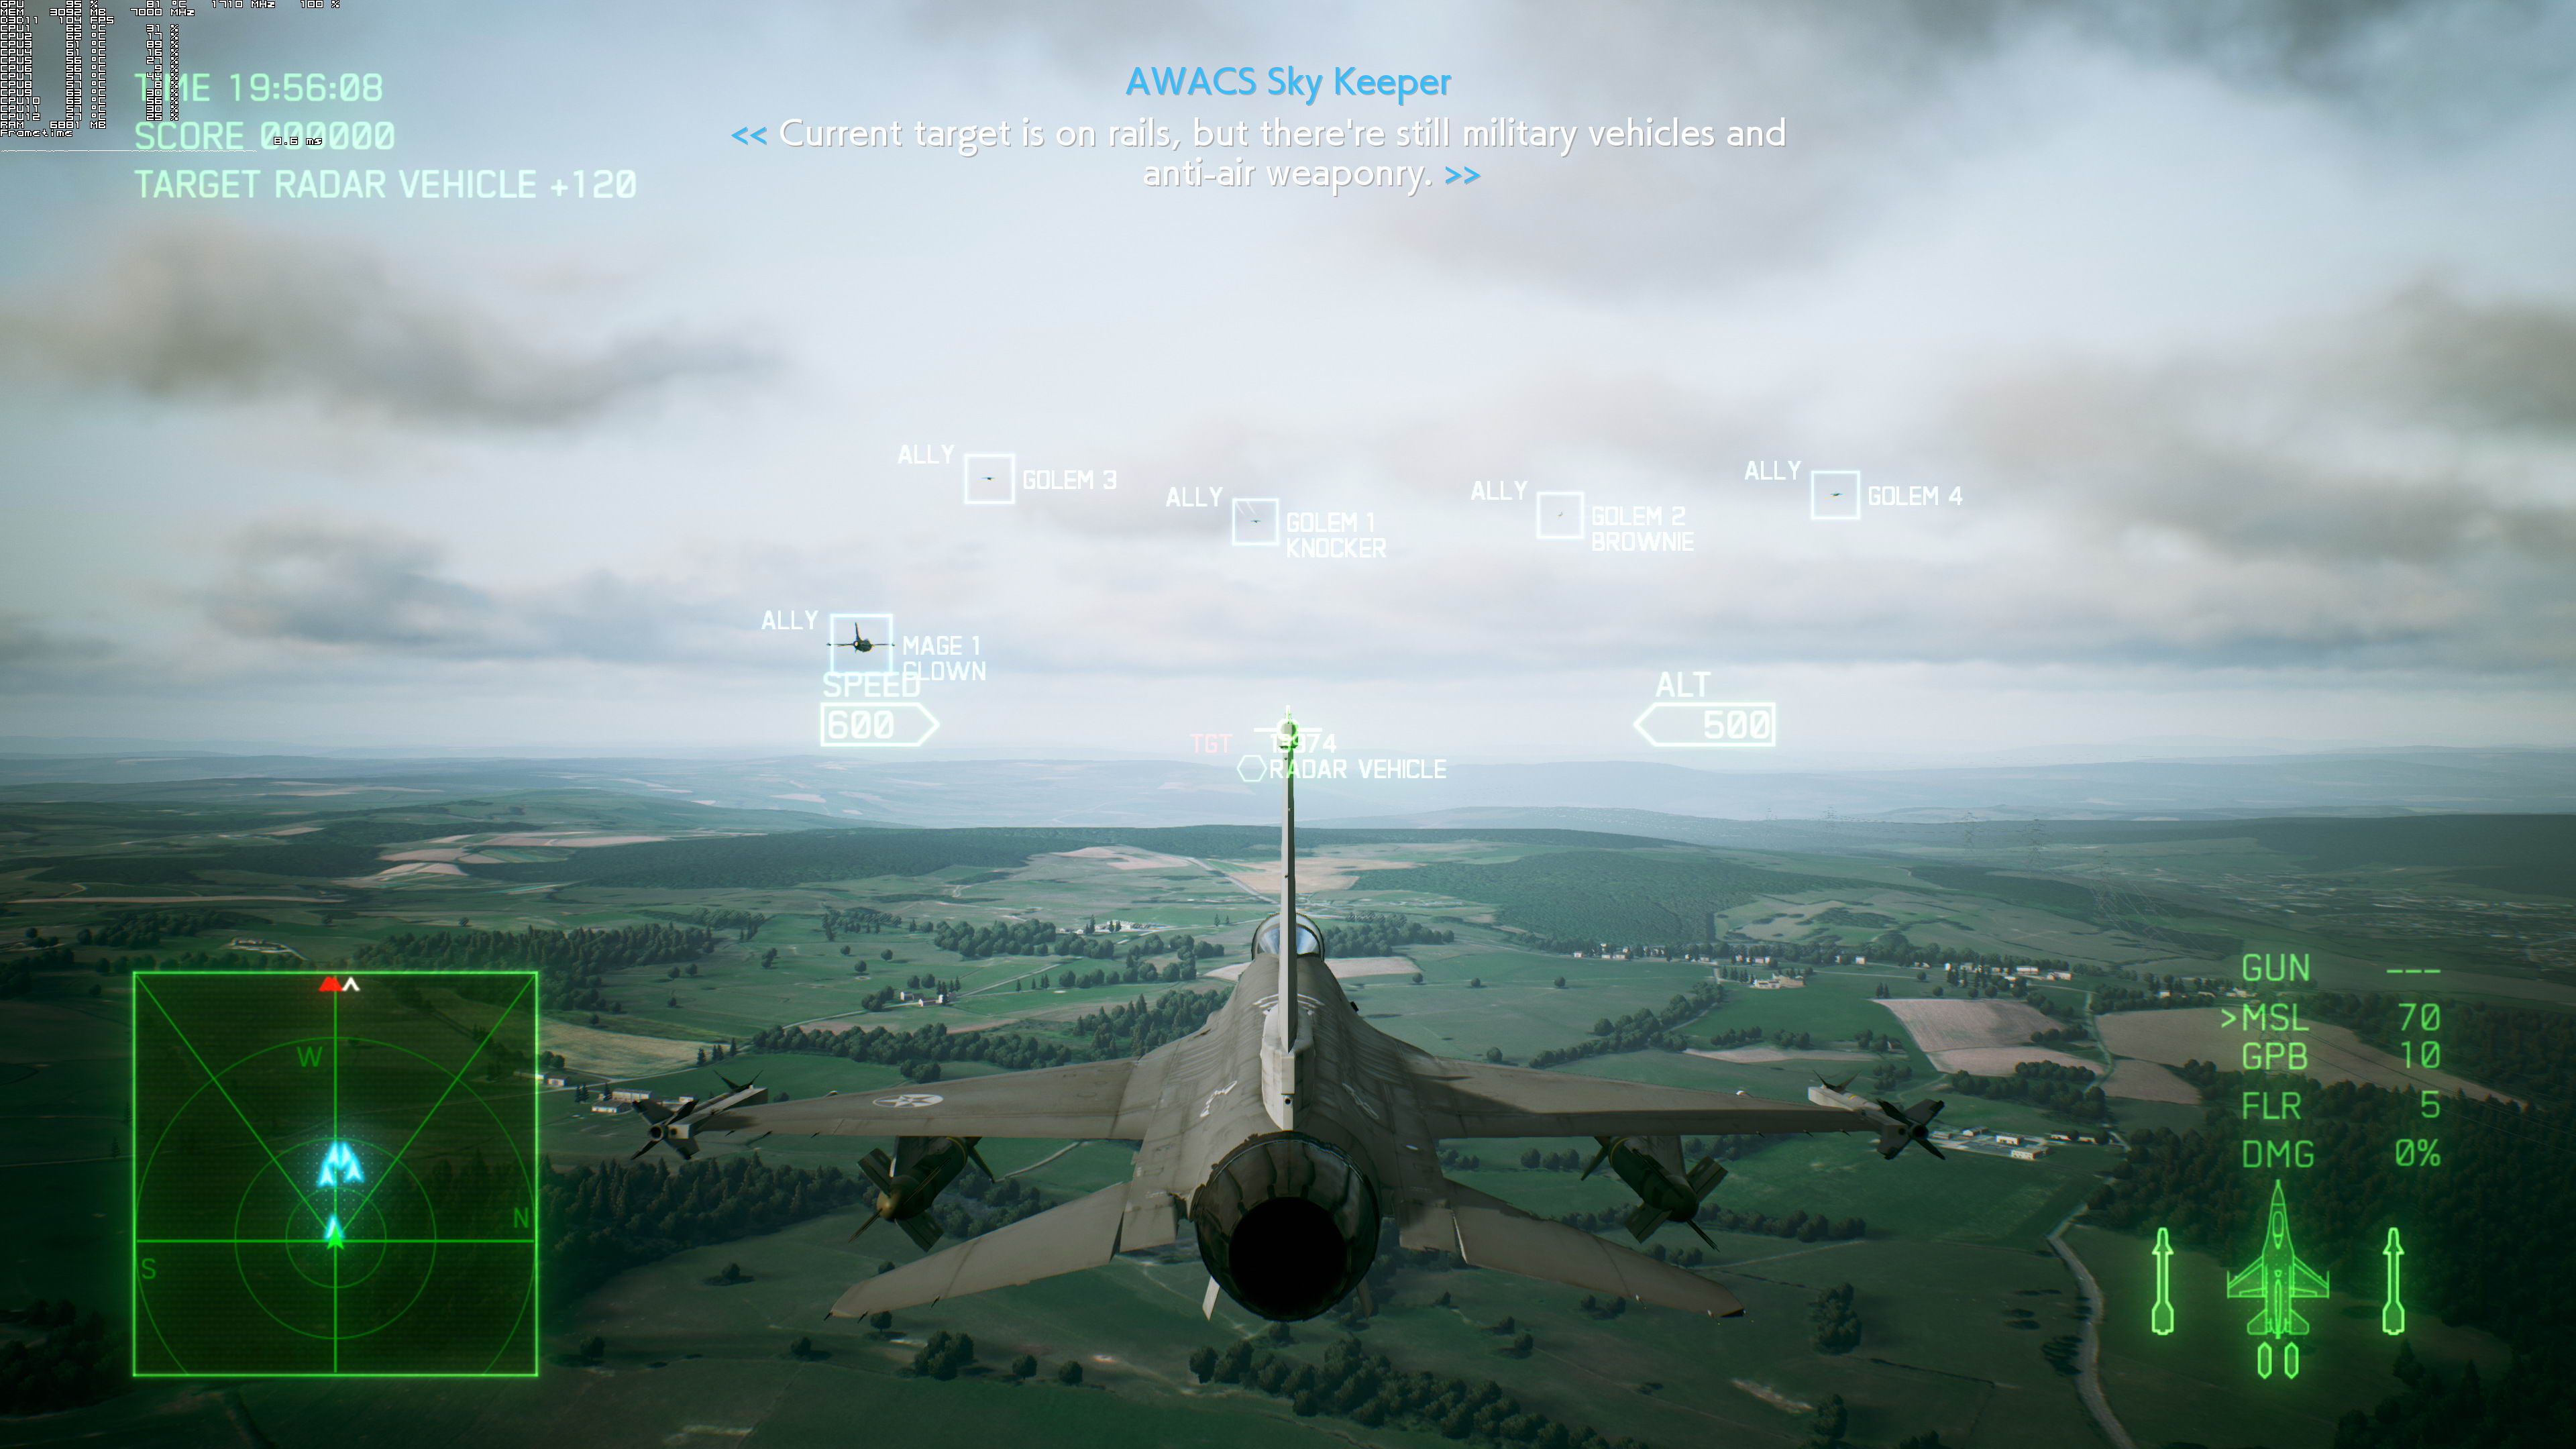 《皇牌空战7》PC版测试截图 2080Ti运行效果超神